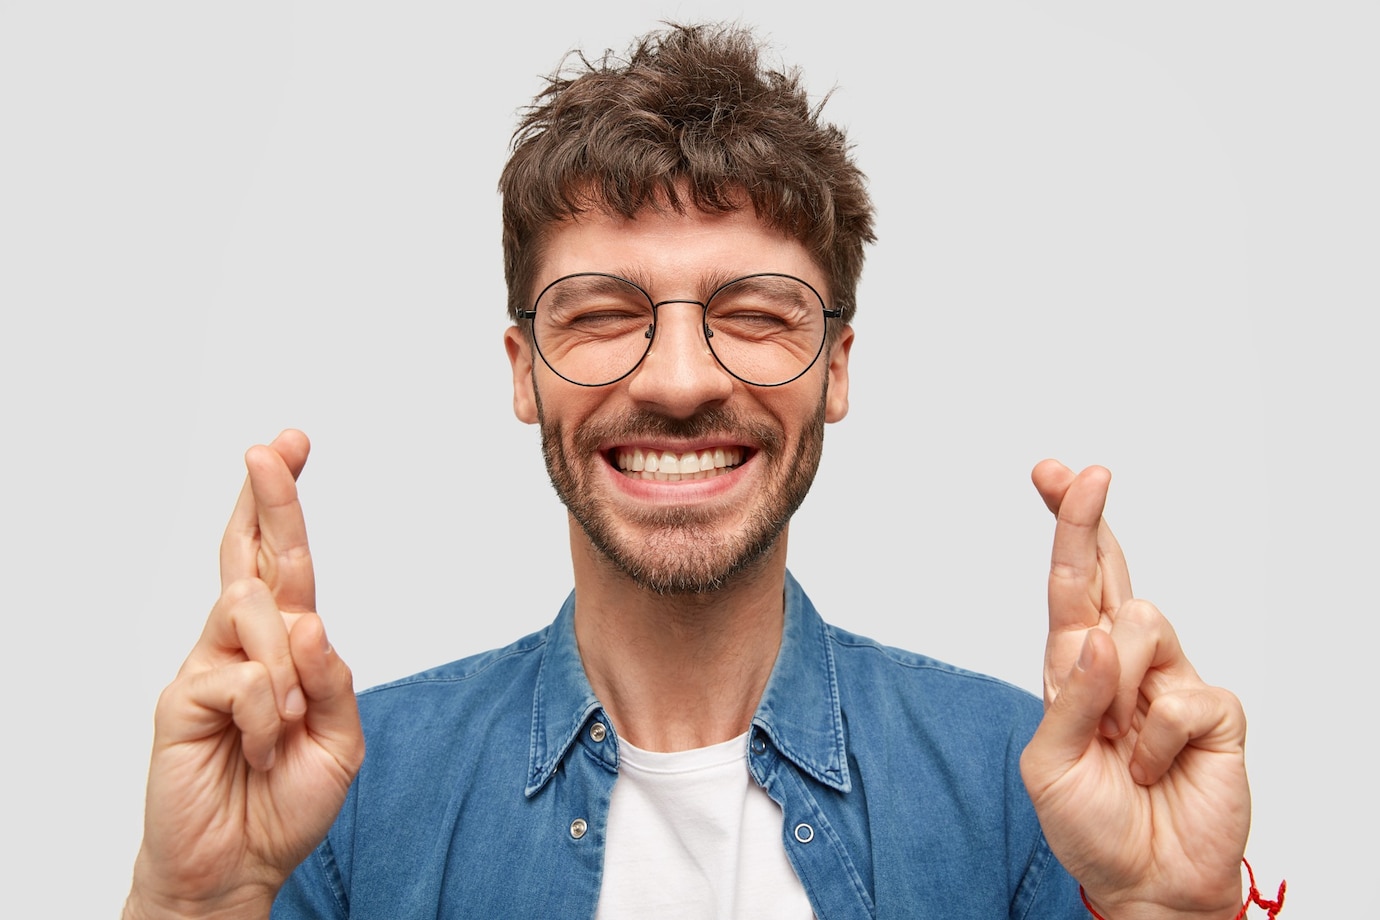 La imagen muestra a un hombre con barba y gafas con los ojos cerrados, sonriendo y con los dos dedos de las dos manos cruzados a modo de buena suerte.